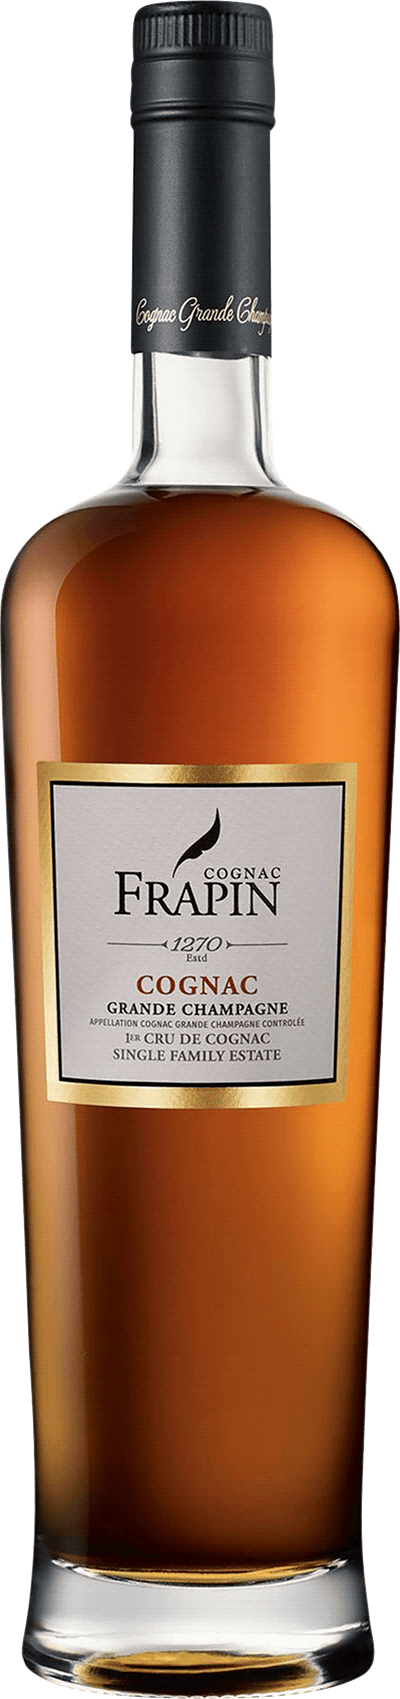 Frapin 1270 Premier Cru de Cognac